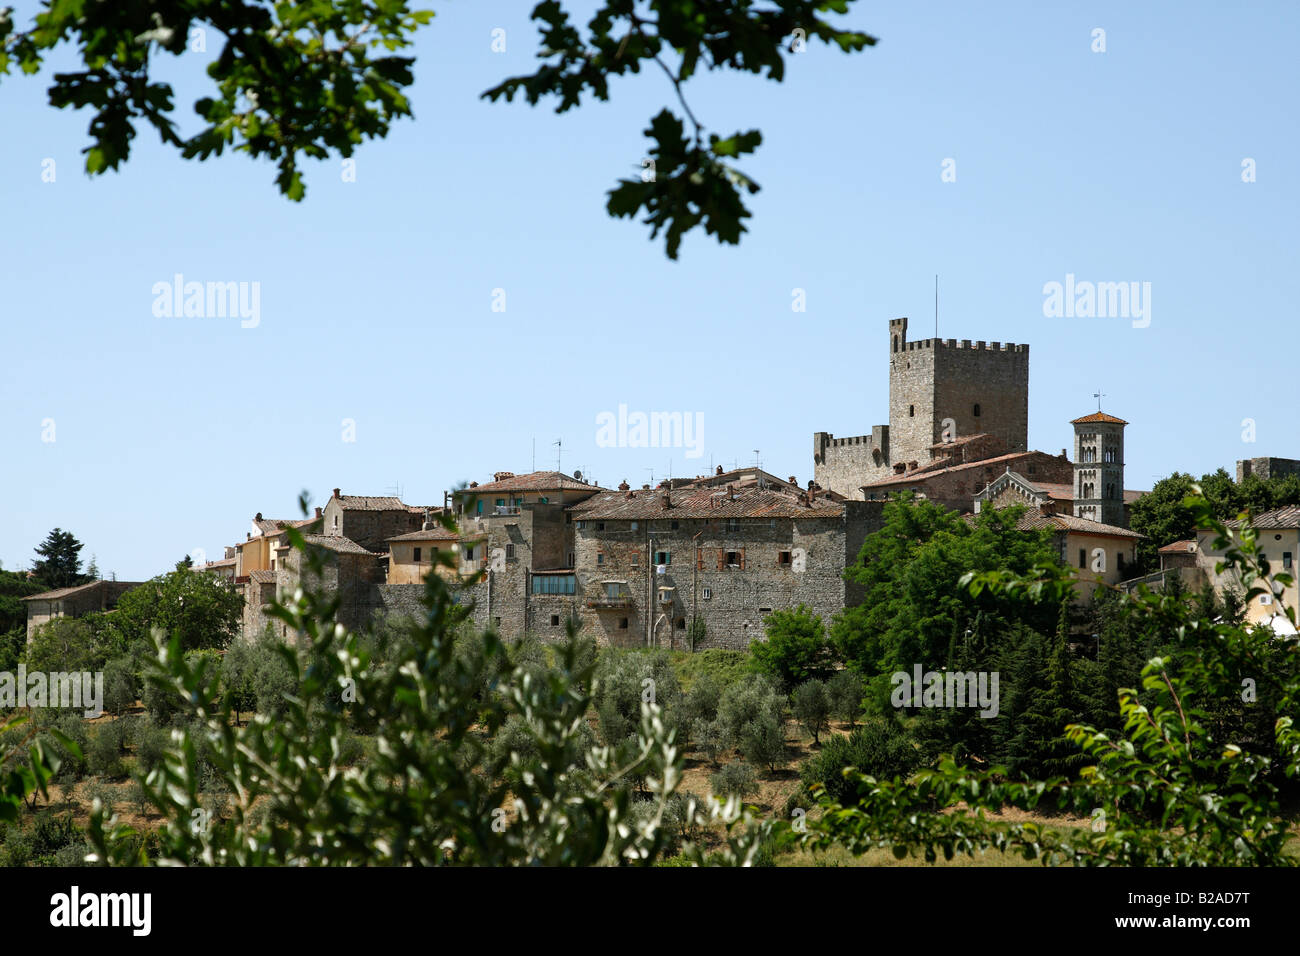 Vue sur la colline de la ville de Castellina in chianti toscane italie Europe Banque D'Images